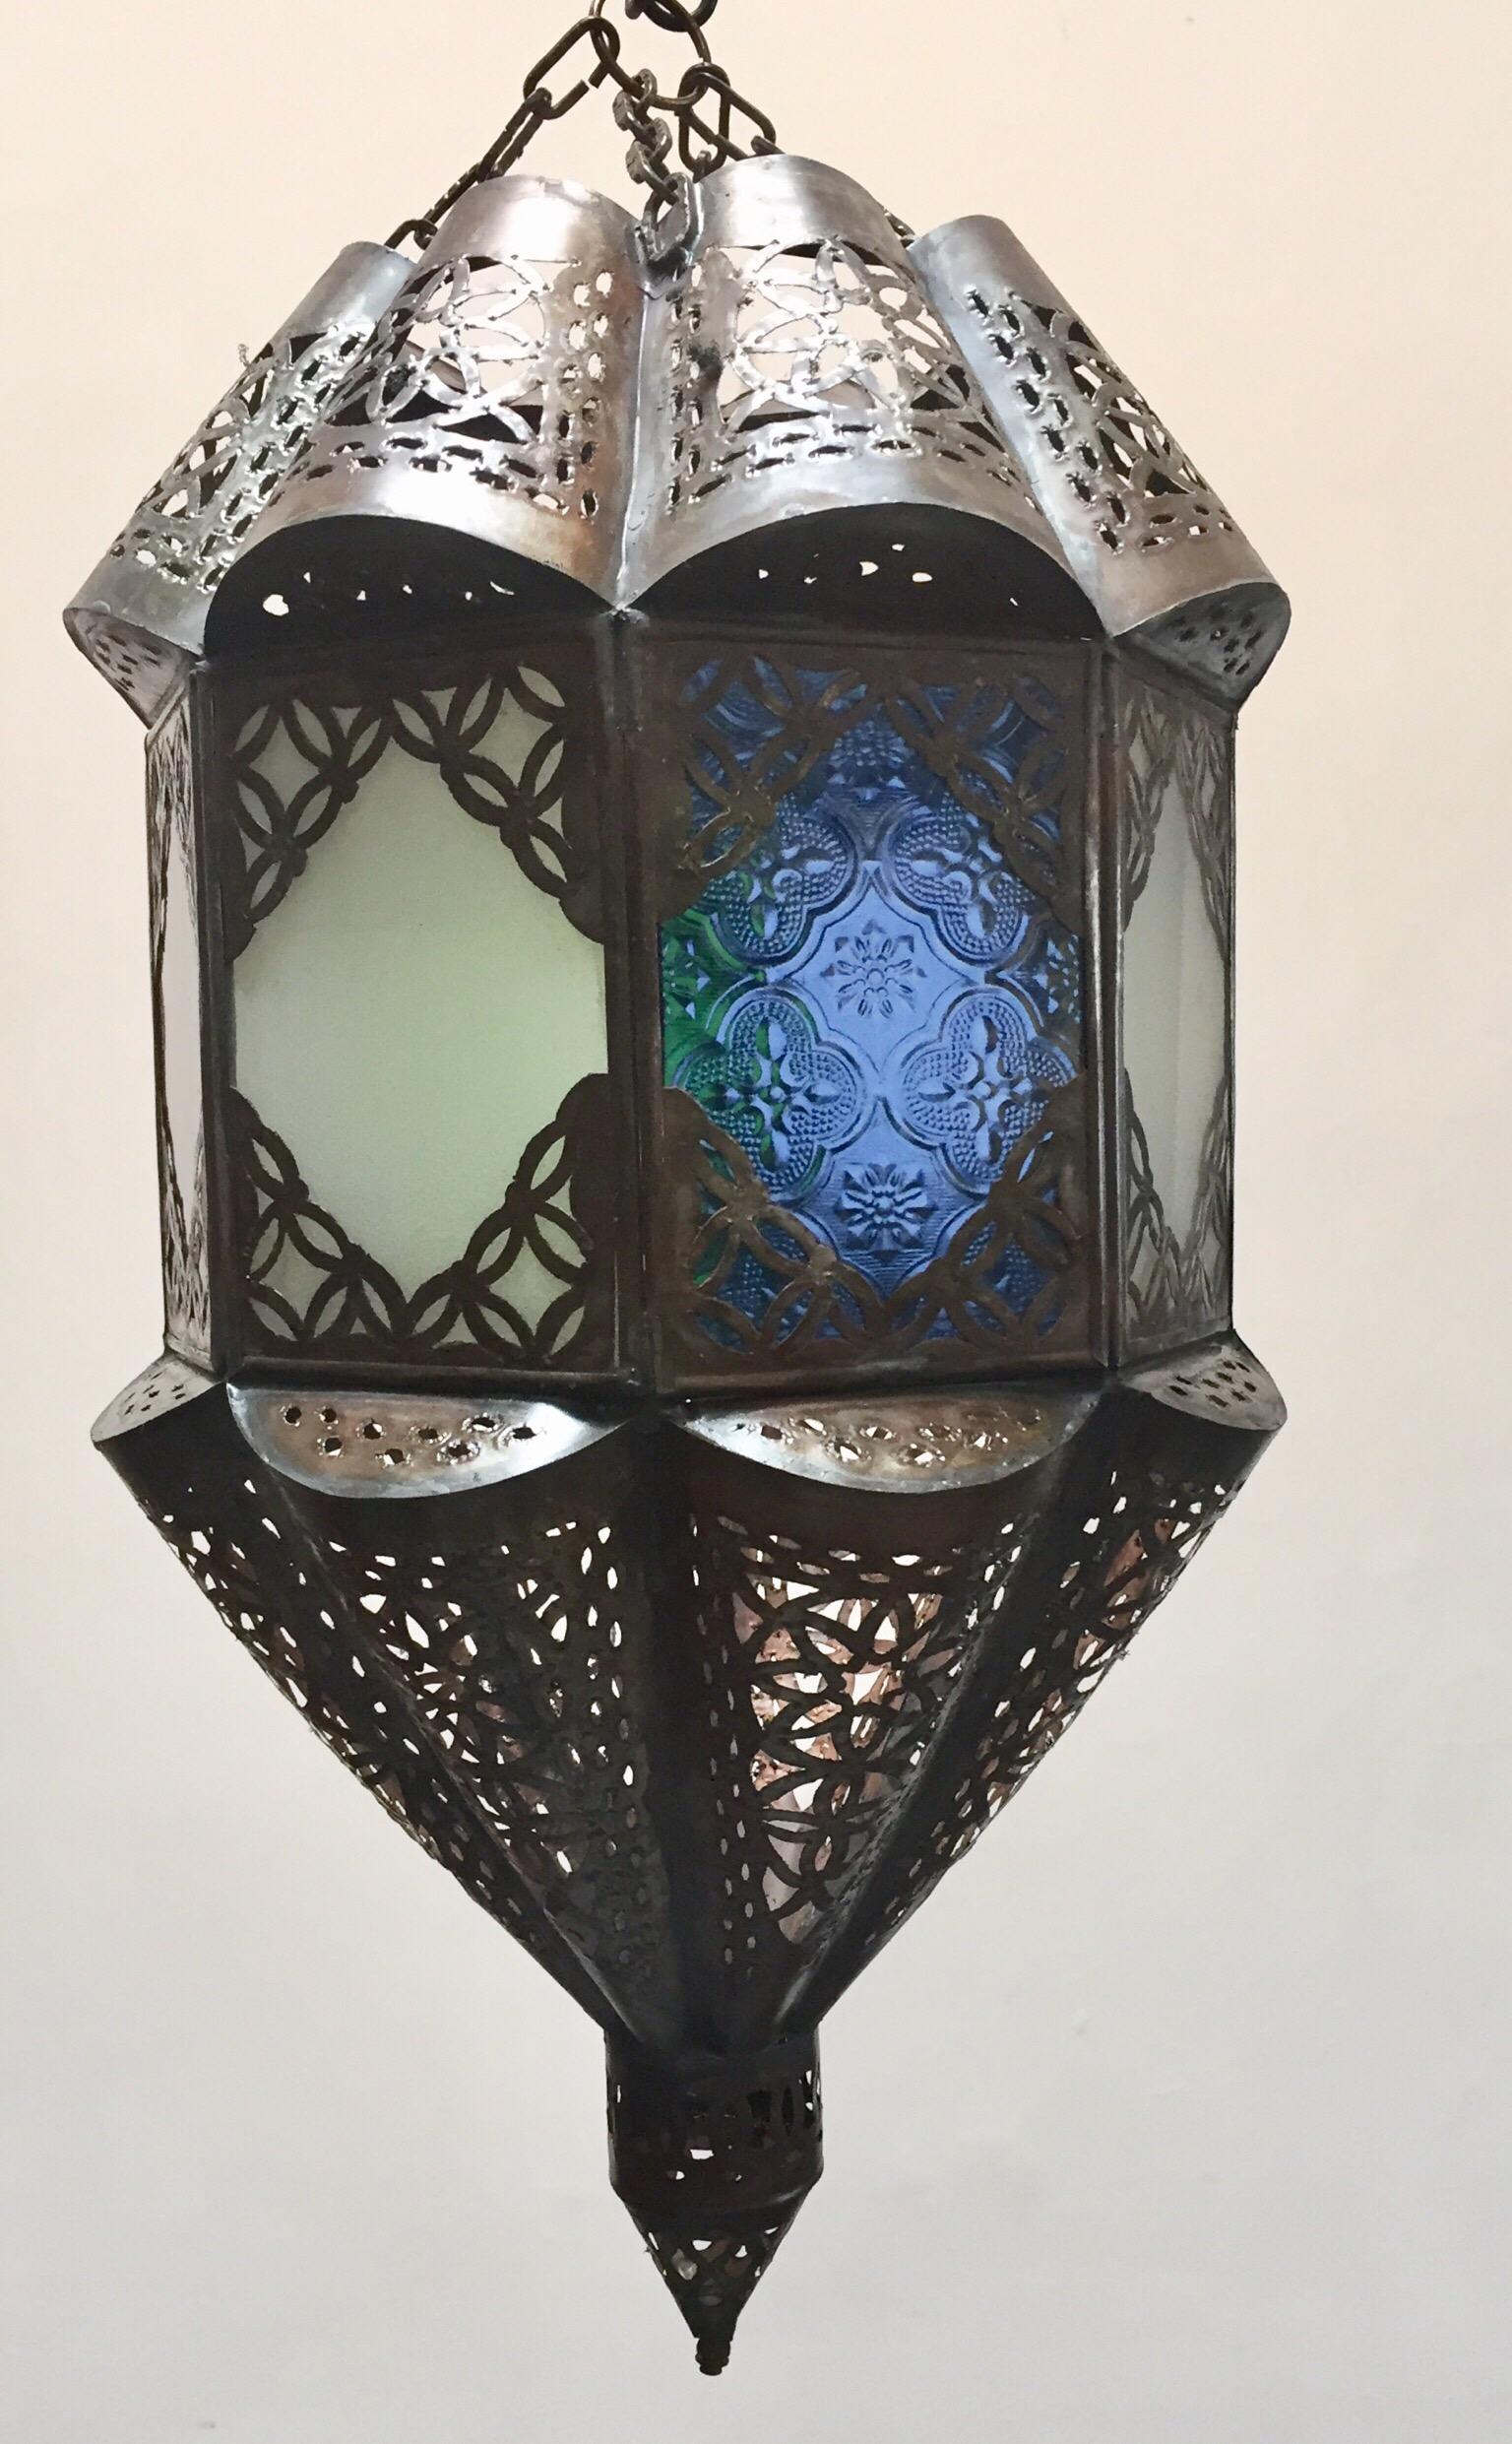 Élégante lanterne marocaine fabriquée à la main avec un verre laiteux dépoli. Fabriqué à la main avec du petit verre taillé et des motifs mauresques en métal filigrané. Plusieurs disponibles. Non raccordé à l'électricité, ombrage